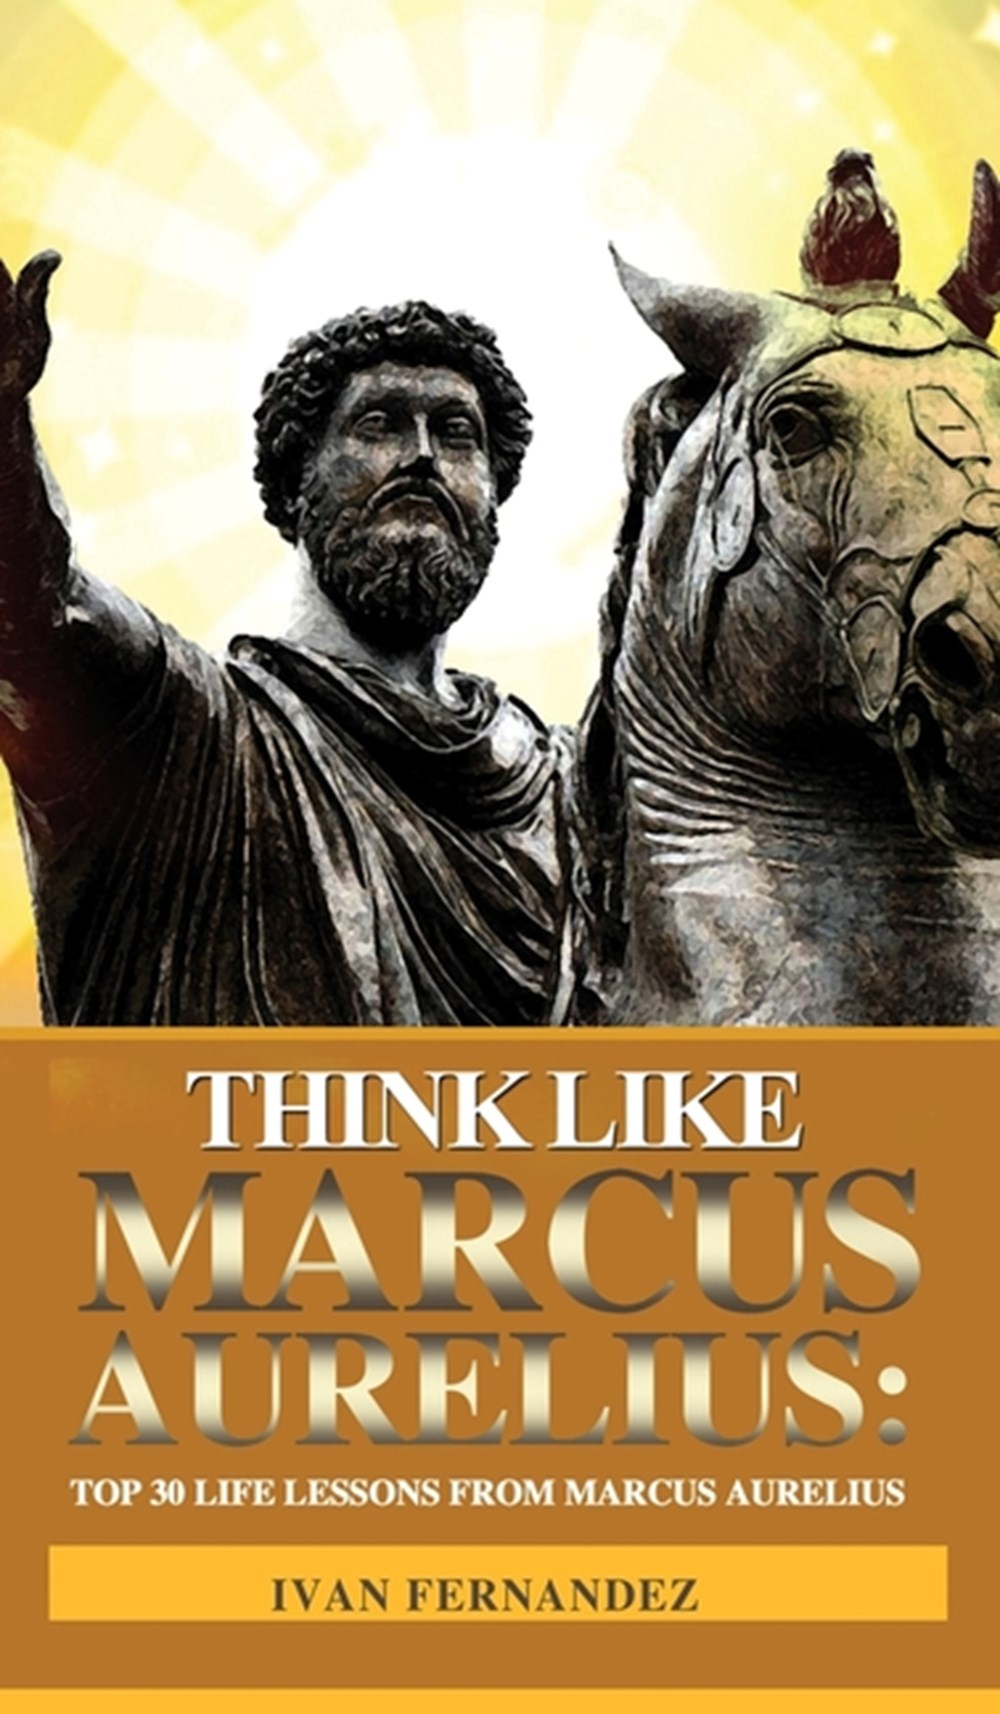 Think Like Marcus Aurelius Top 30 Life Lessons from Marcus Aurelius